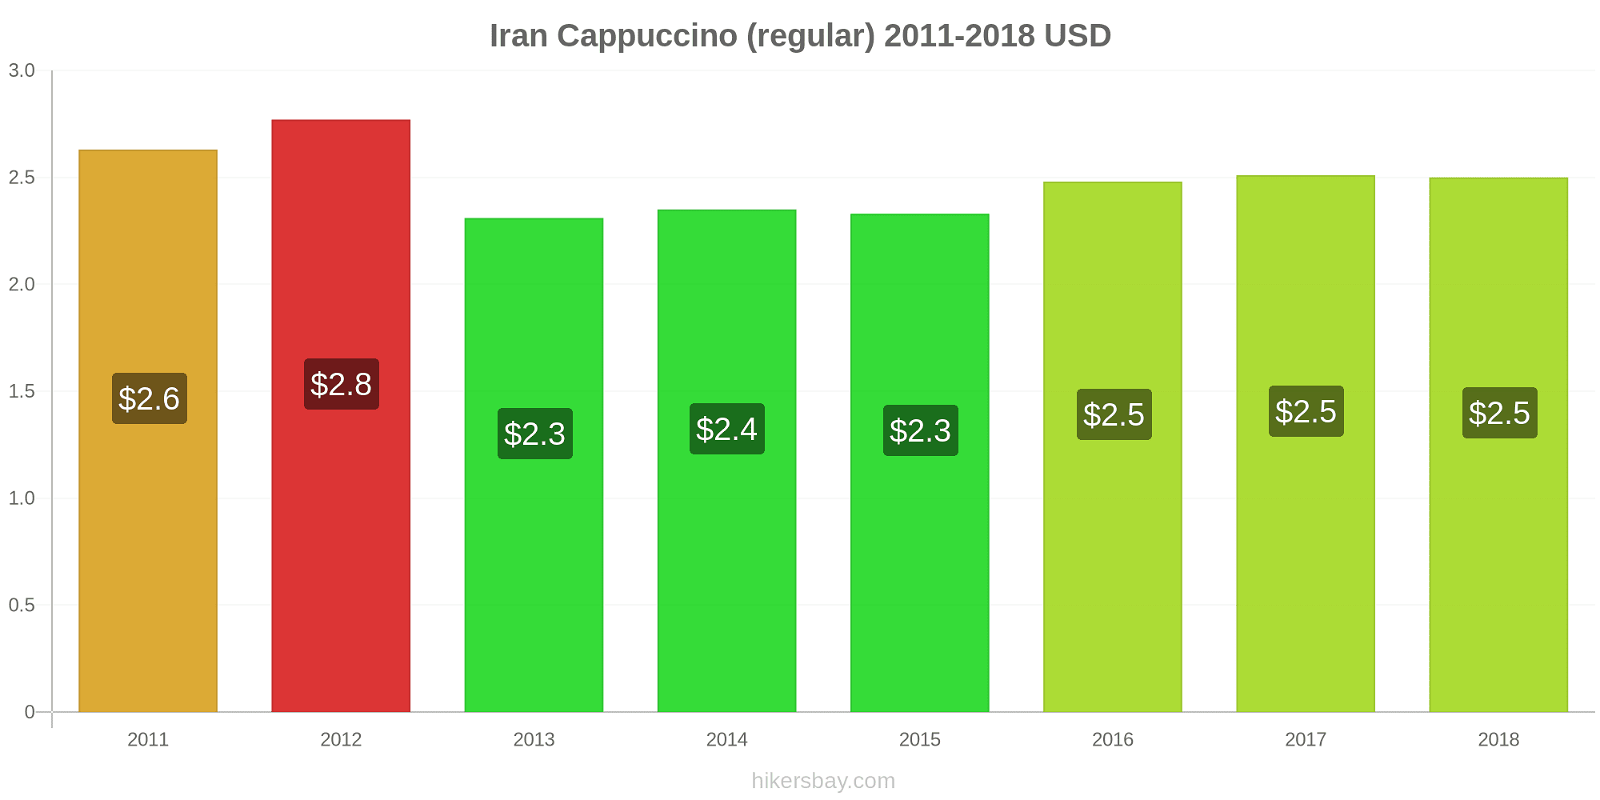 Iran price changes Cappuccino hikersbay.com